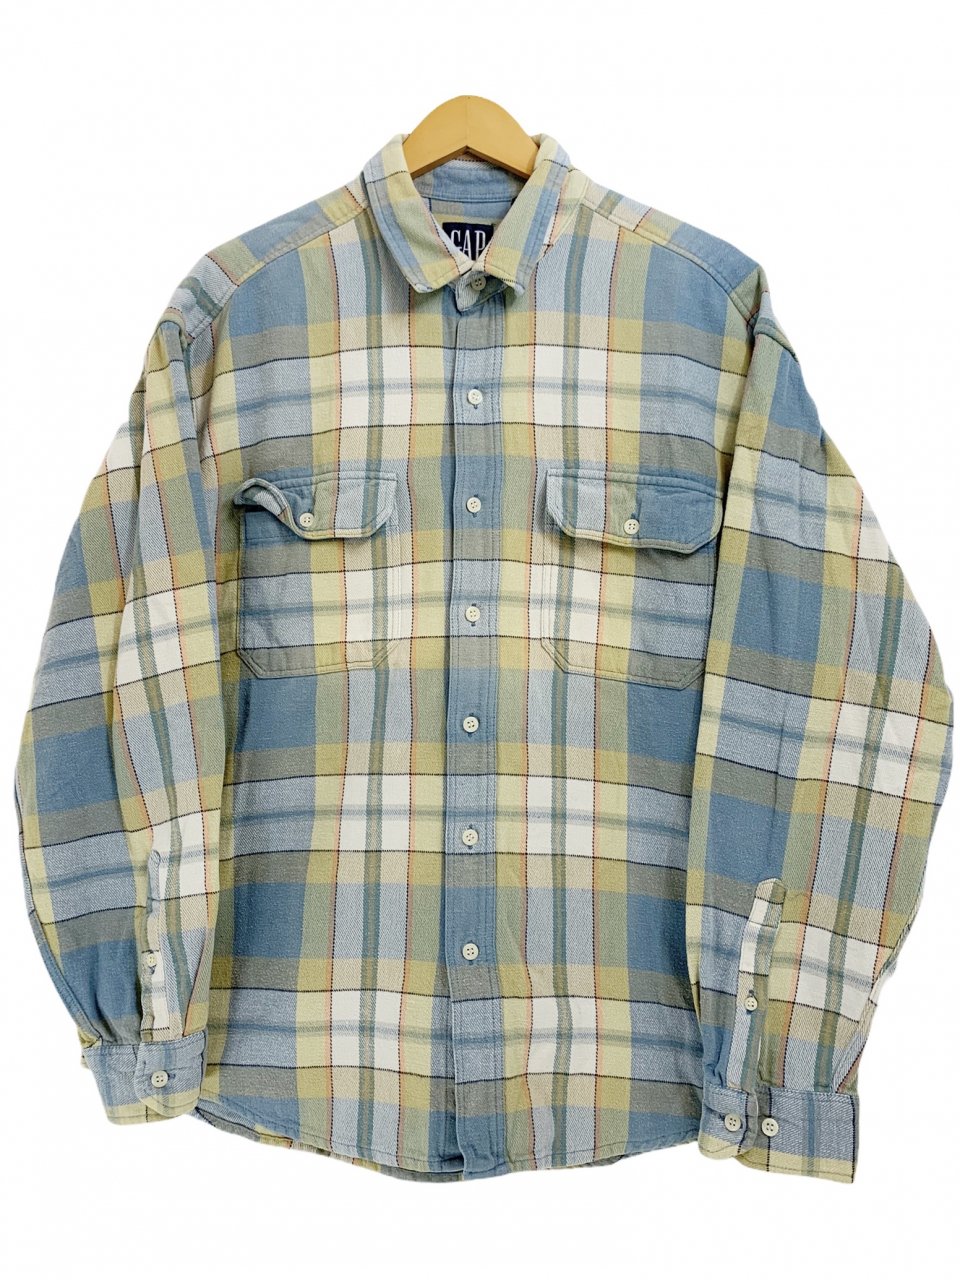 90s OLD GAP Check Flannel L/S Shirt 薄青 L デカタグ オールド 